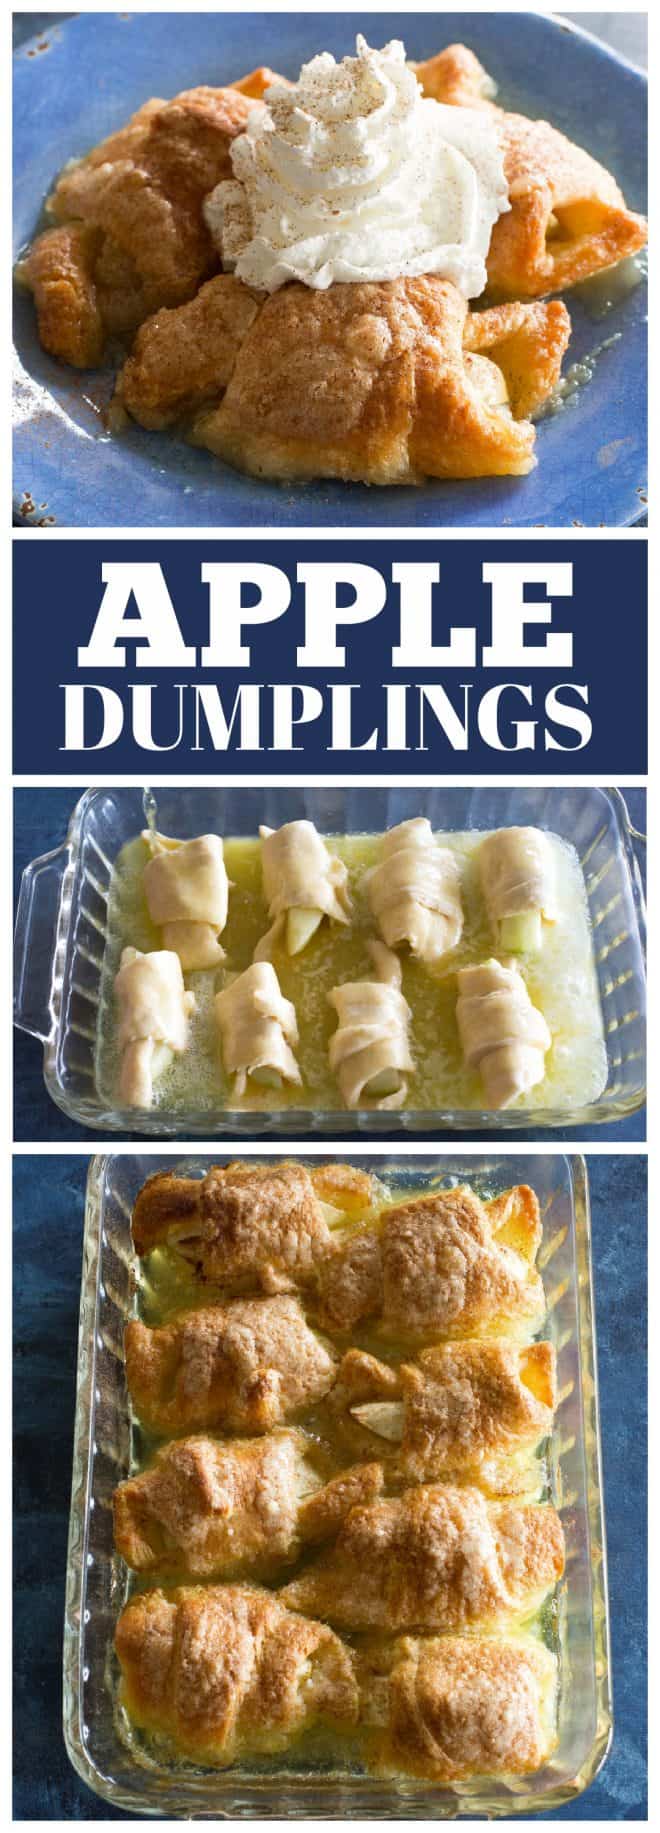 Dumplings aux pommes